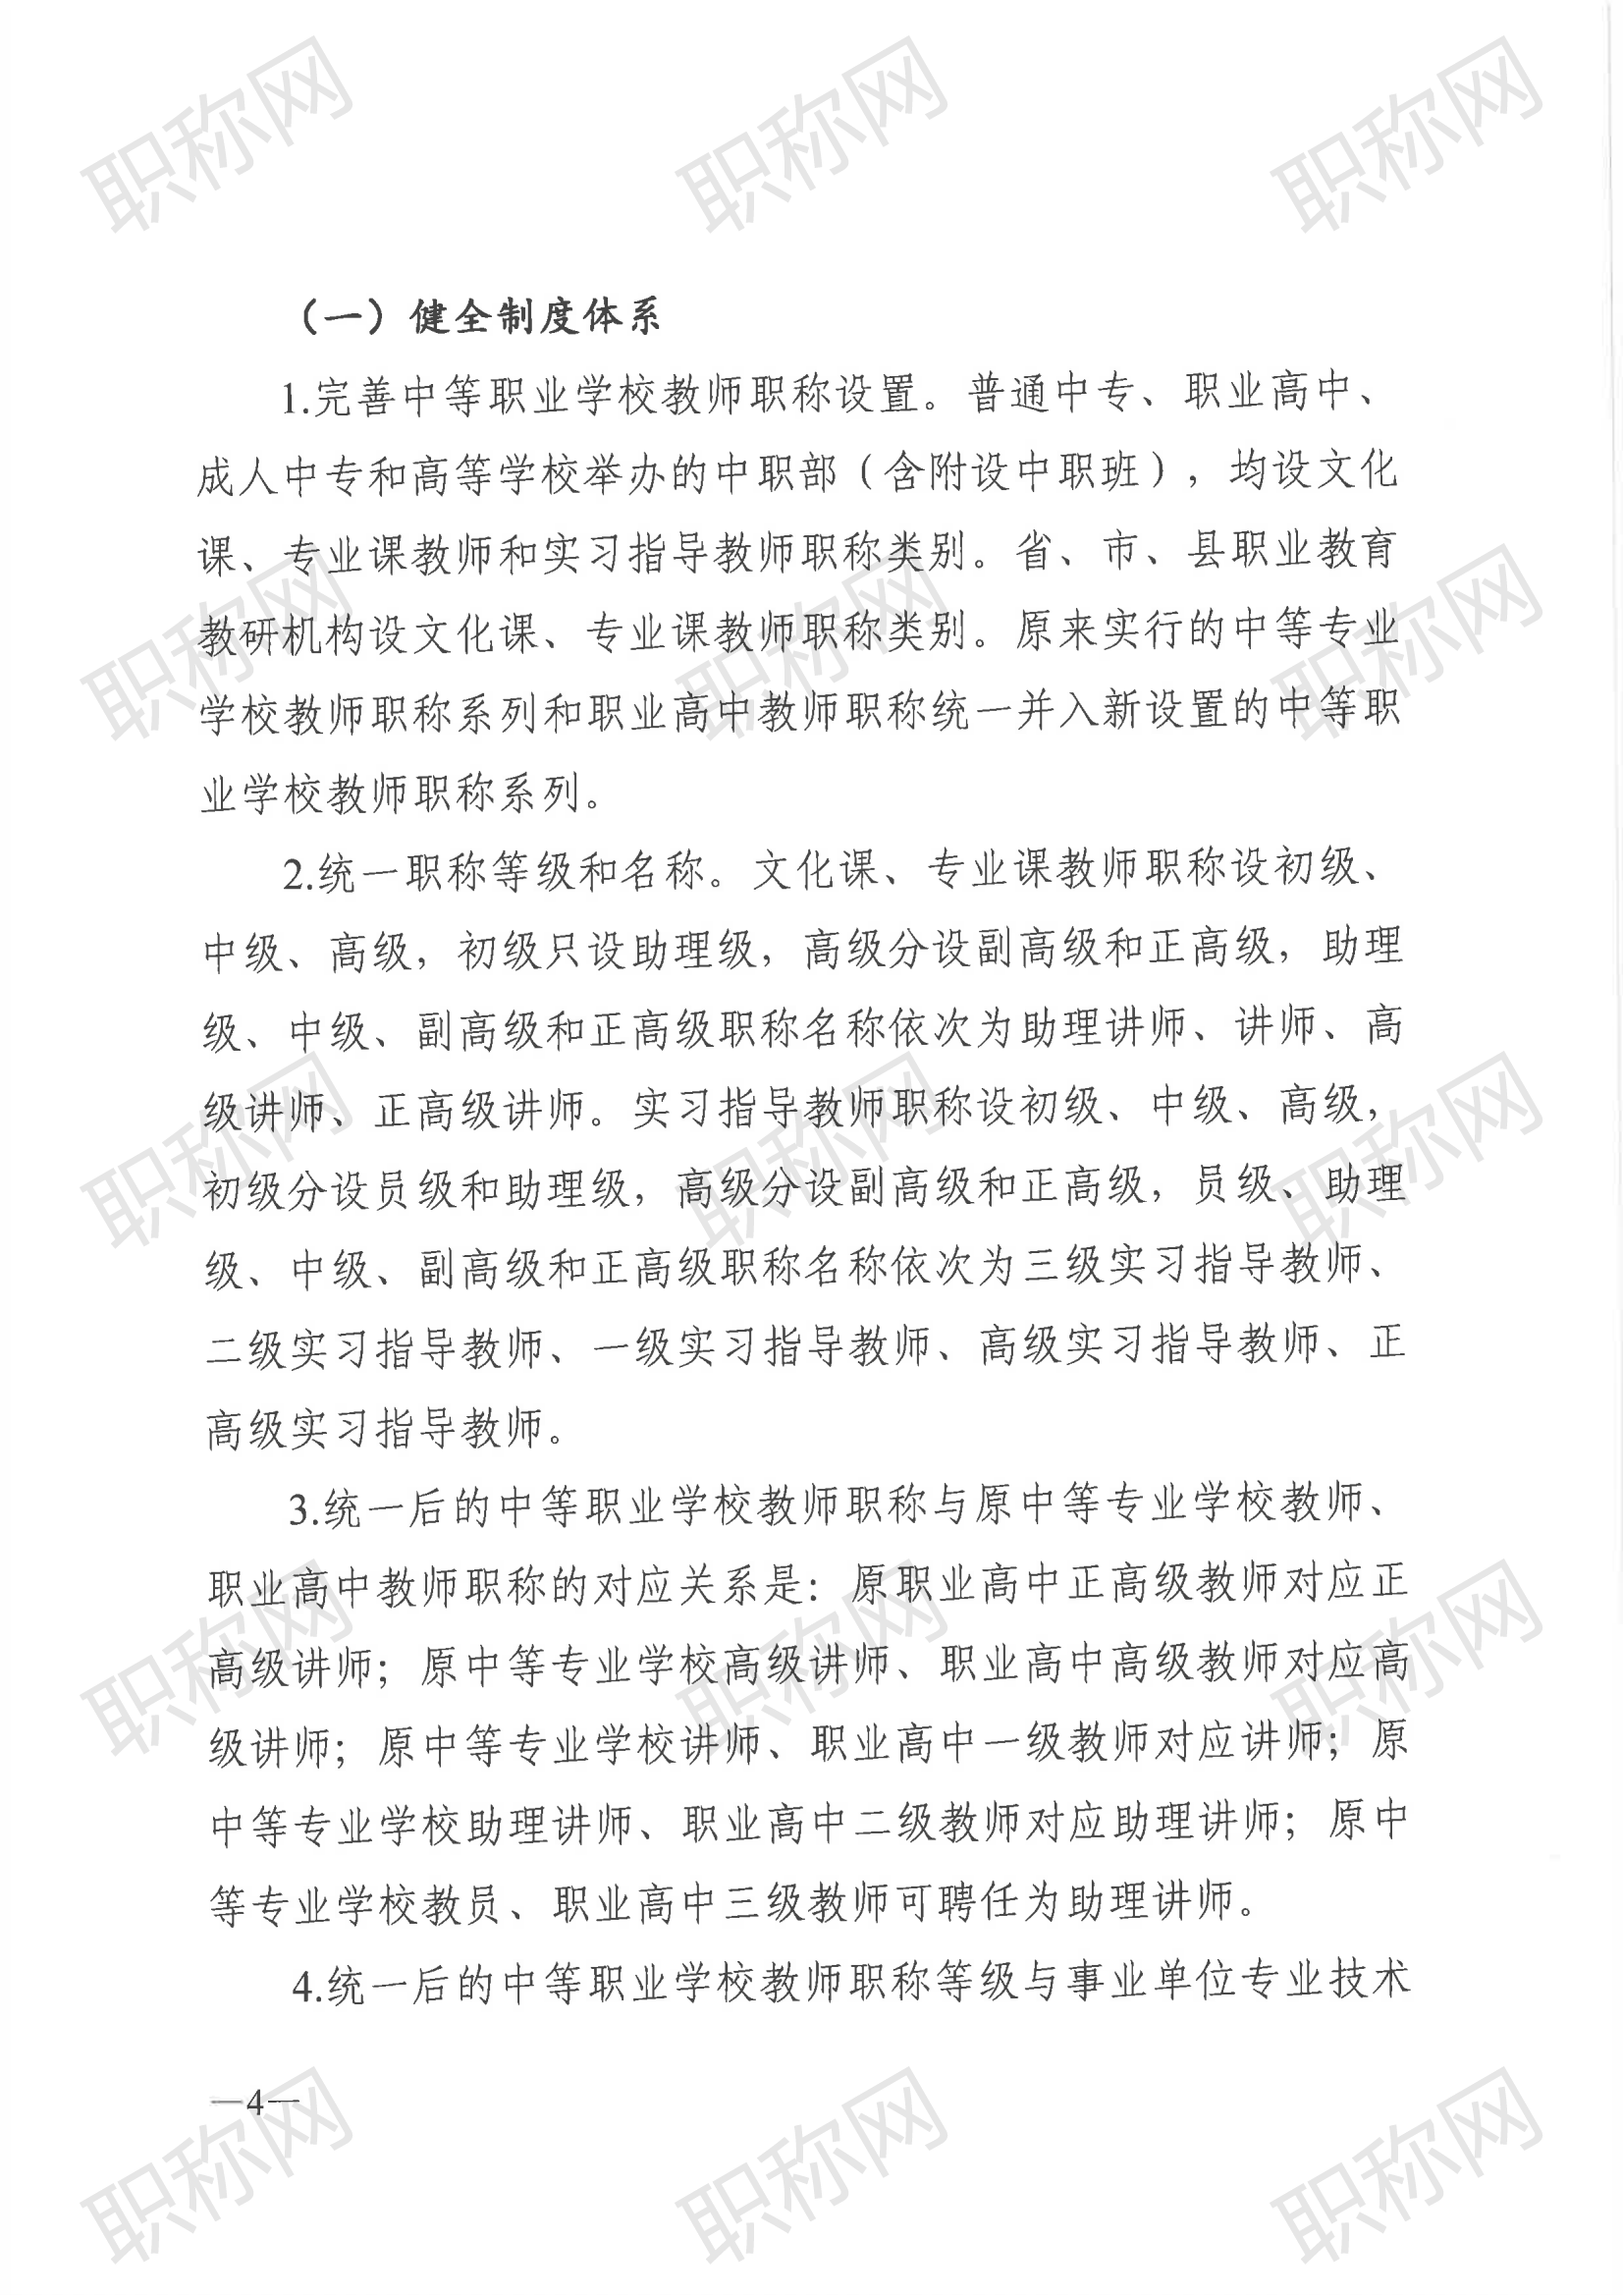 广东省深化中等职业学校教师职称制度改革实施方案》的通知_03.png